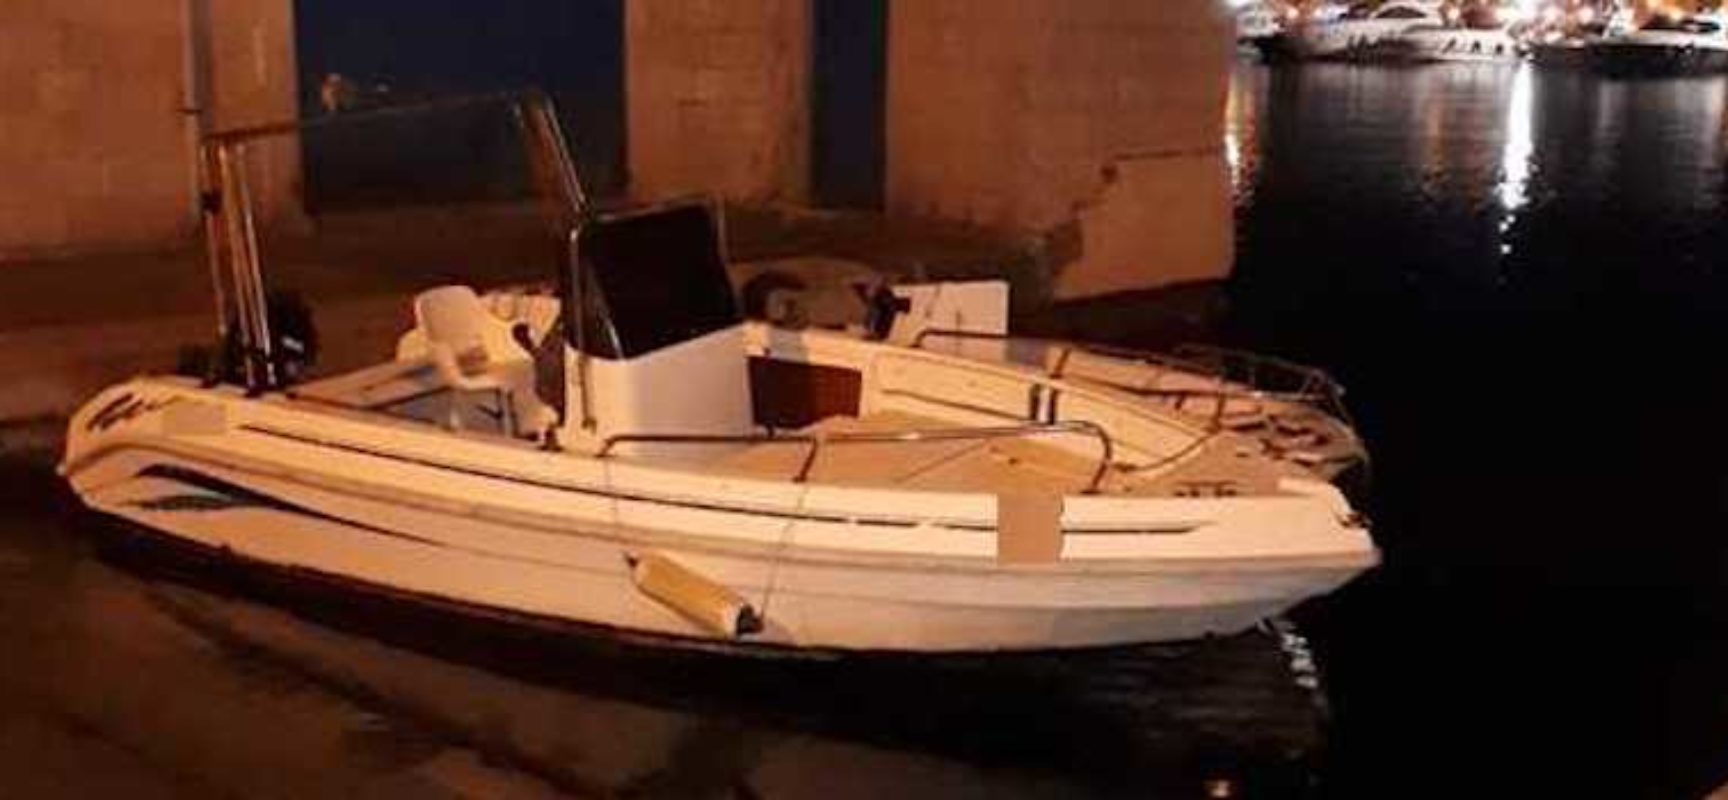 Furti a natanti e imbarcazioni ormeggiate, Carabinieri di Bisceglie arrestano due persone